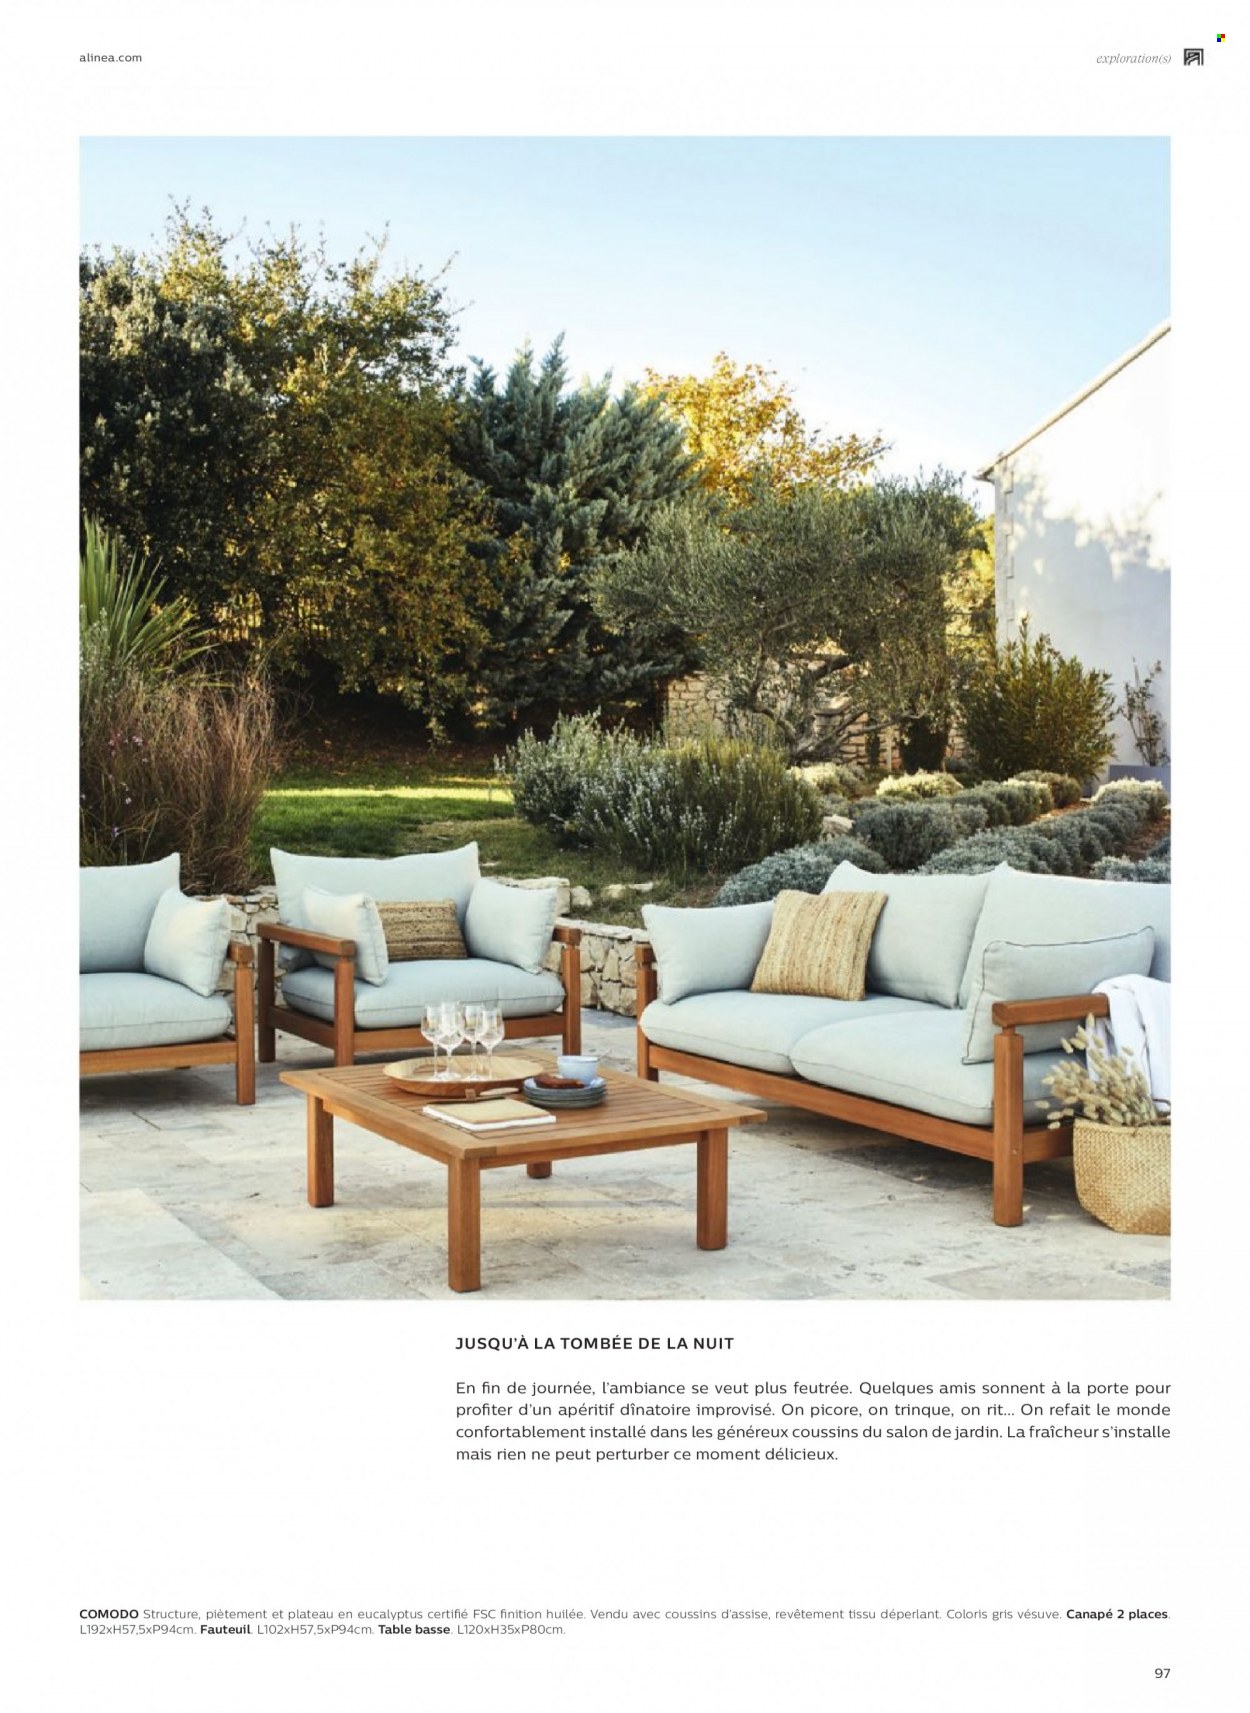 thumbnail - Catalogue alinea - Produits soldés - table, coussin, canapé, canapé 2 places, fauteuil, table basse, salon de jardin. Page 97.